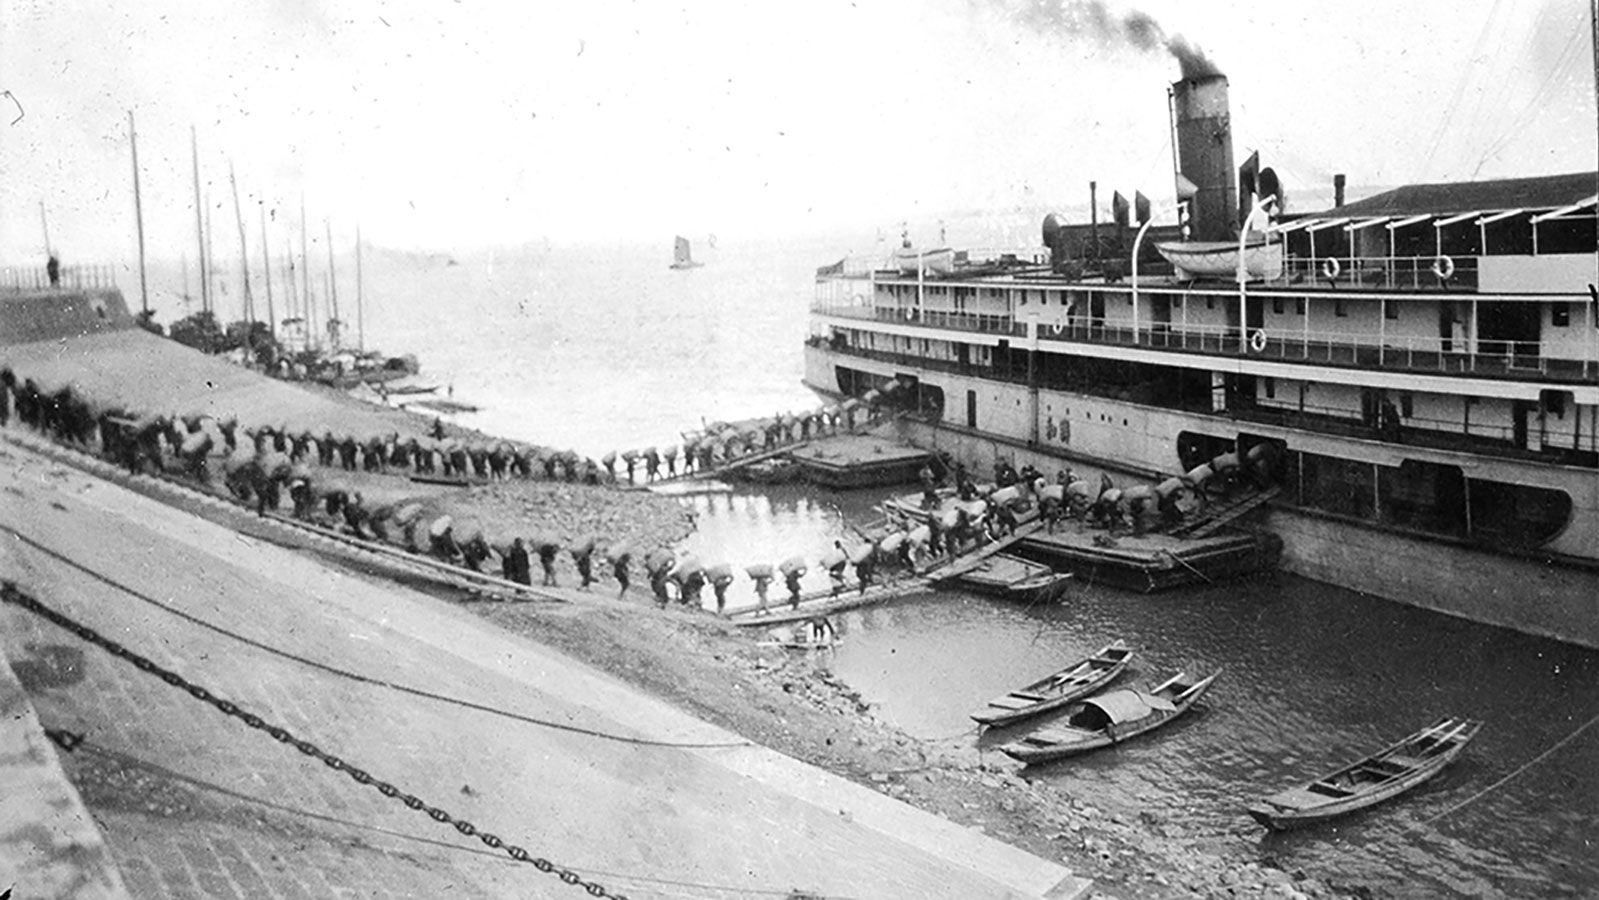 A steamer is loaded in Hankow.